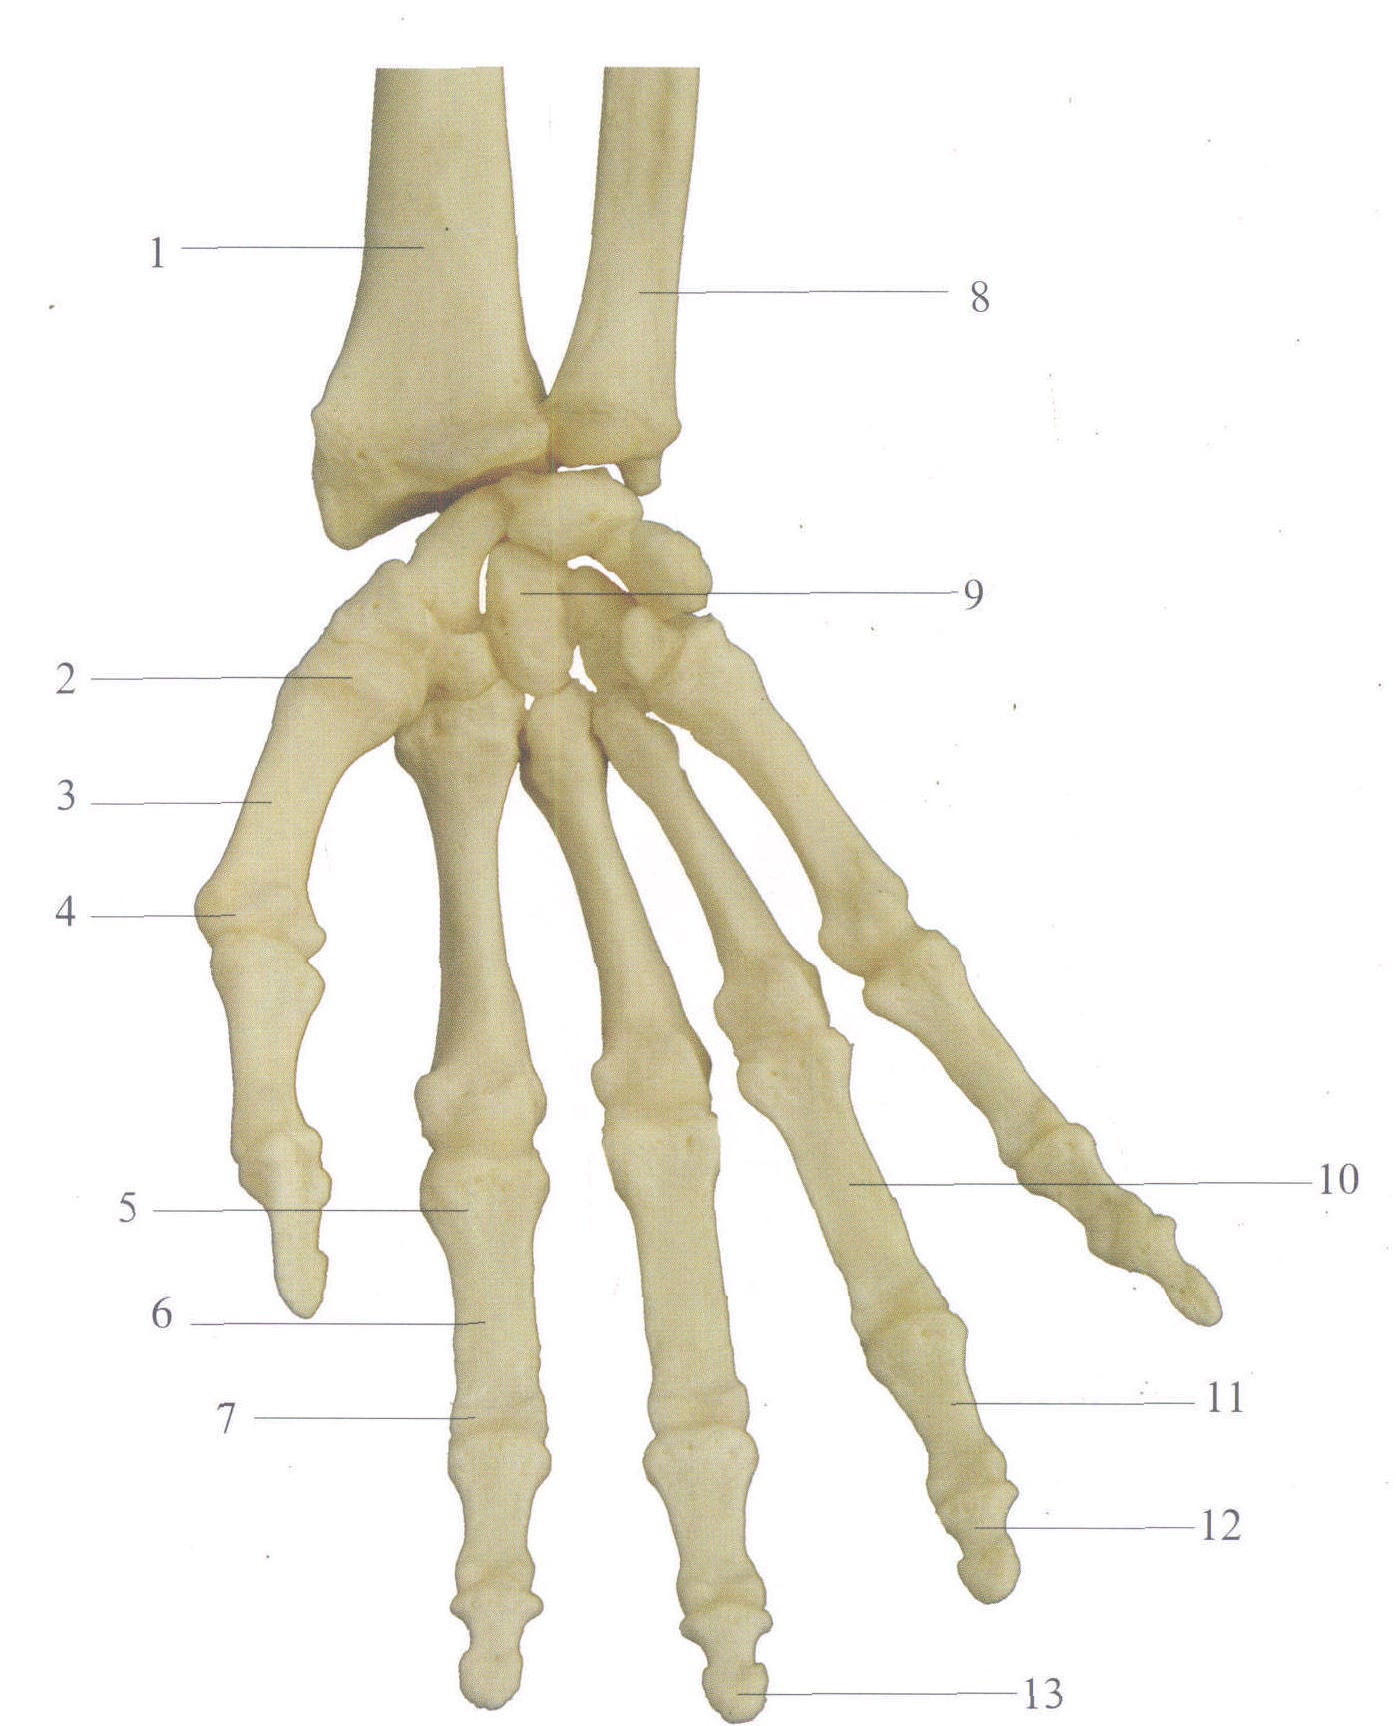 手背骨骼解剖图图片